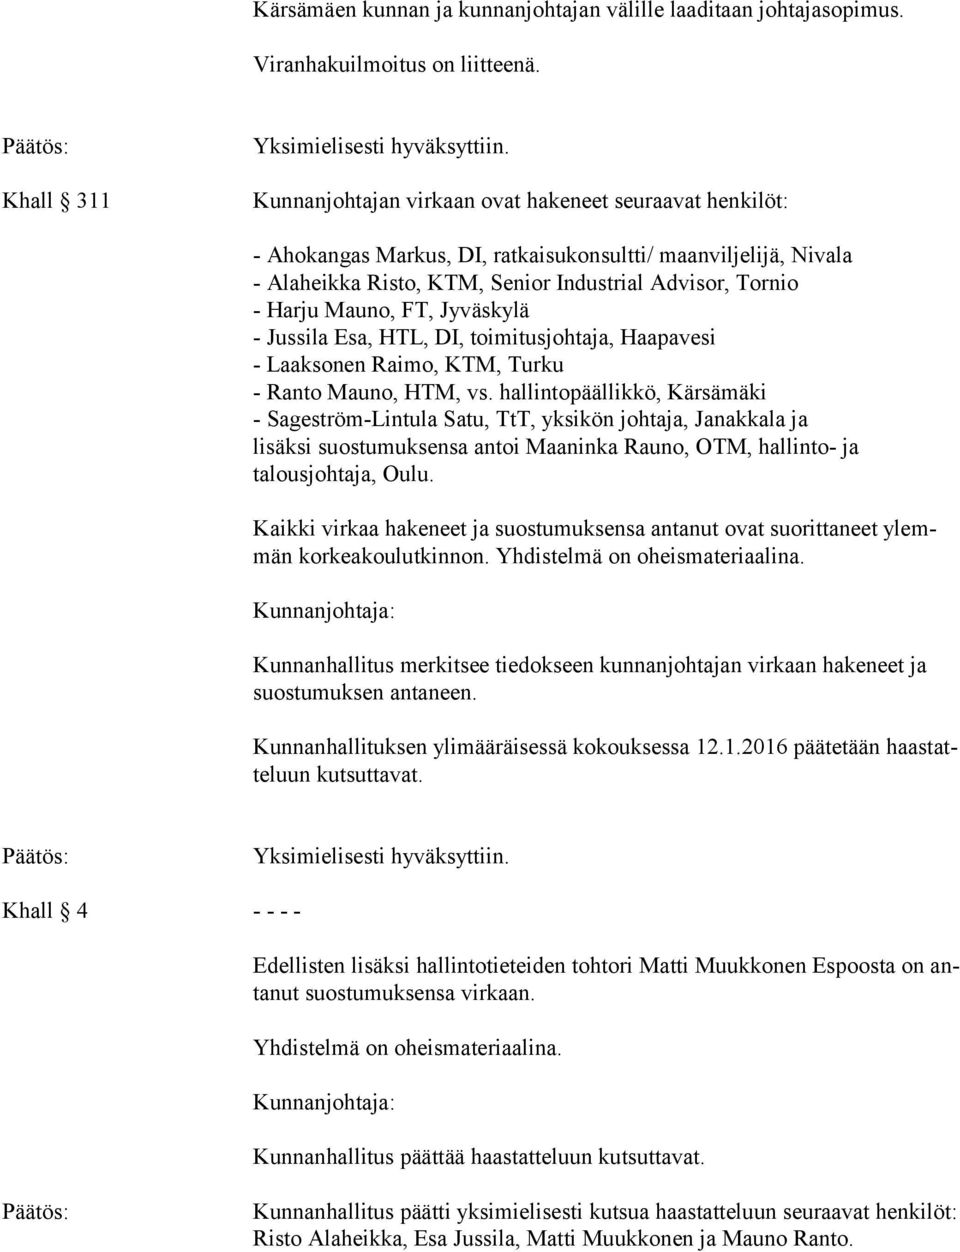 Jyväskylä - Jussila Esa, HTL, DI, toimitusjohtaja, Haapavesi - Laaksonen Raimo, KTM, Turku - Ranto Mauno, HTM, vs.